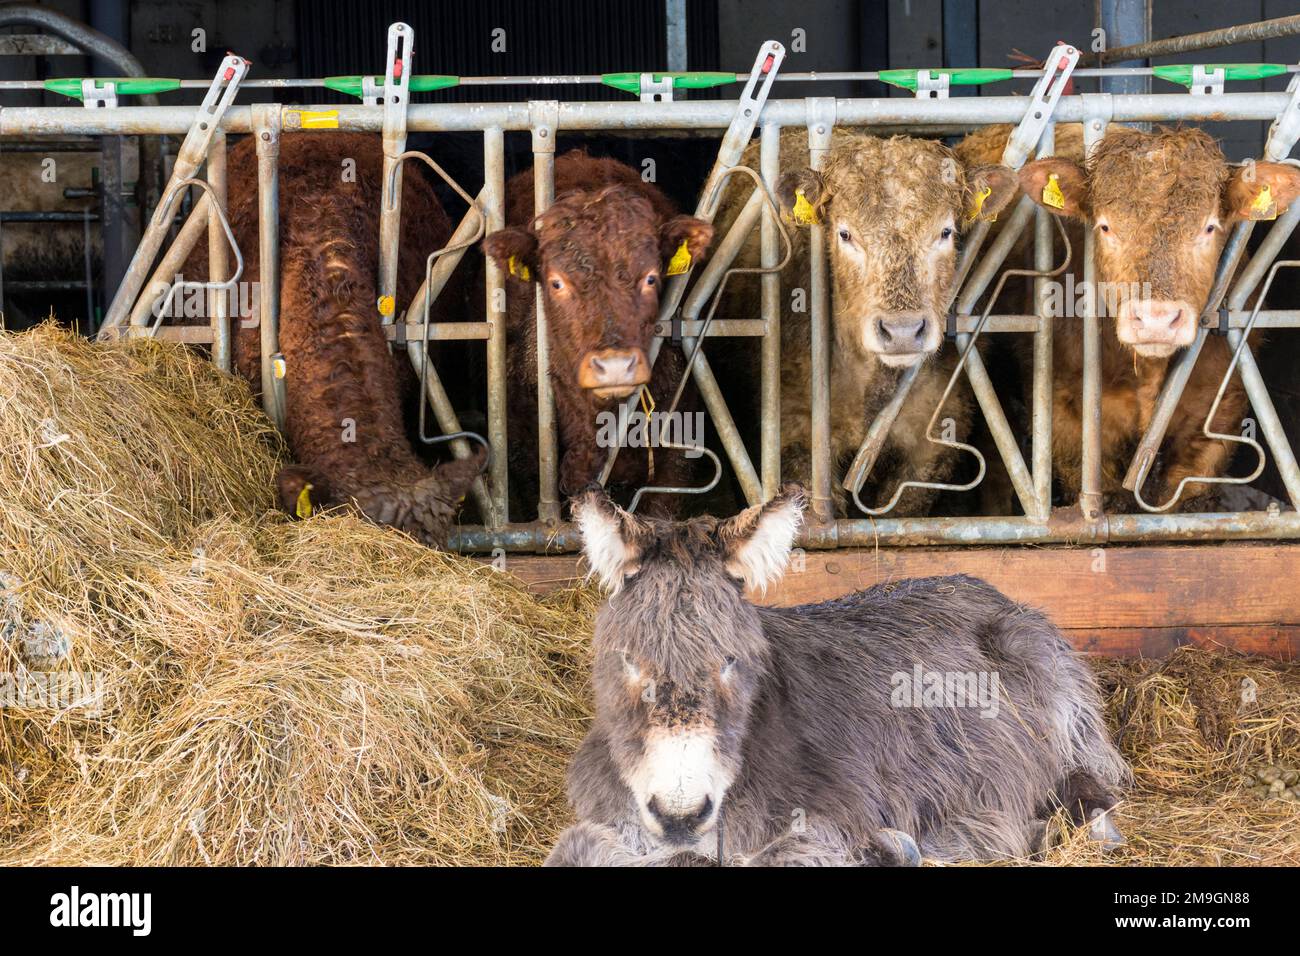 L'alimentazione dei bovini come asino si basa sull'erba insilata o sul fieno utilizzato come mangime per i bovini in inverno. Foto Stock